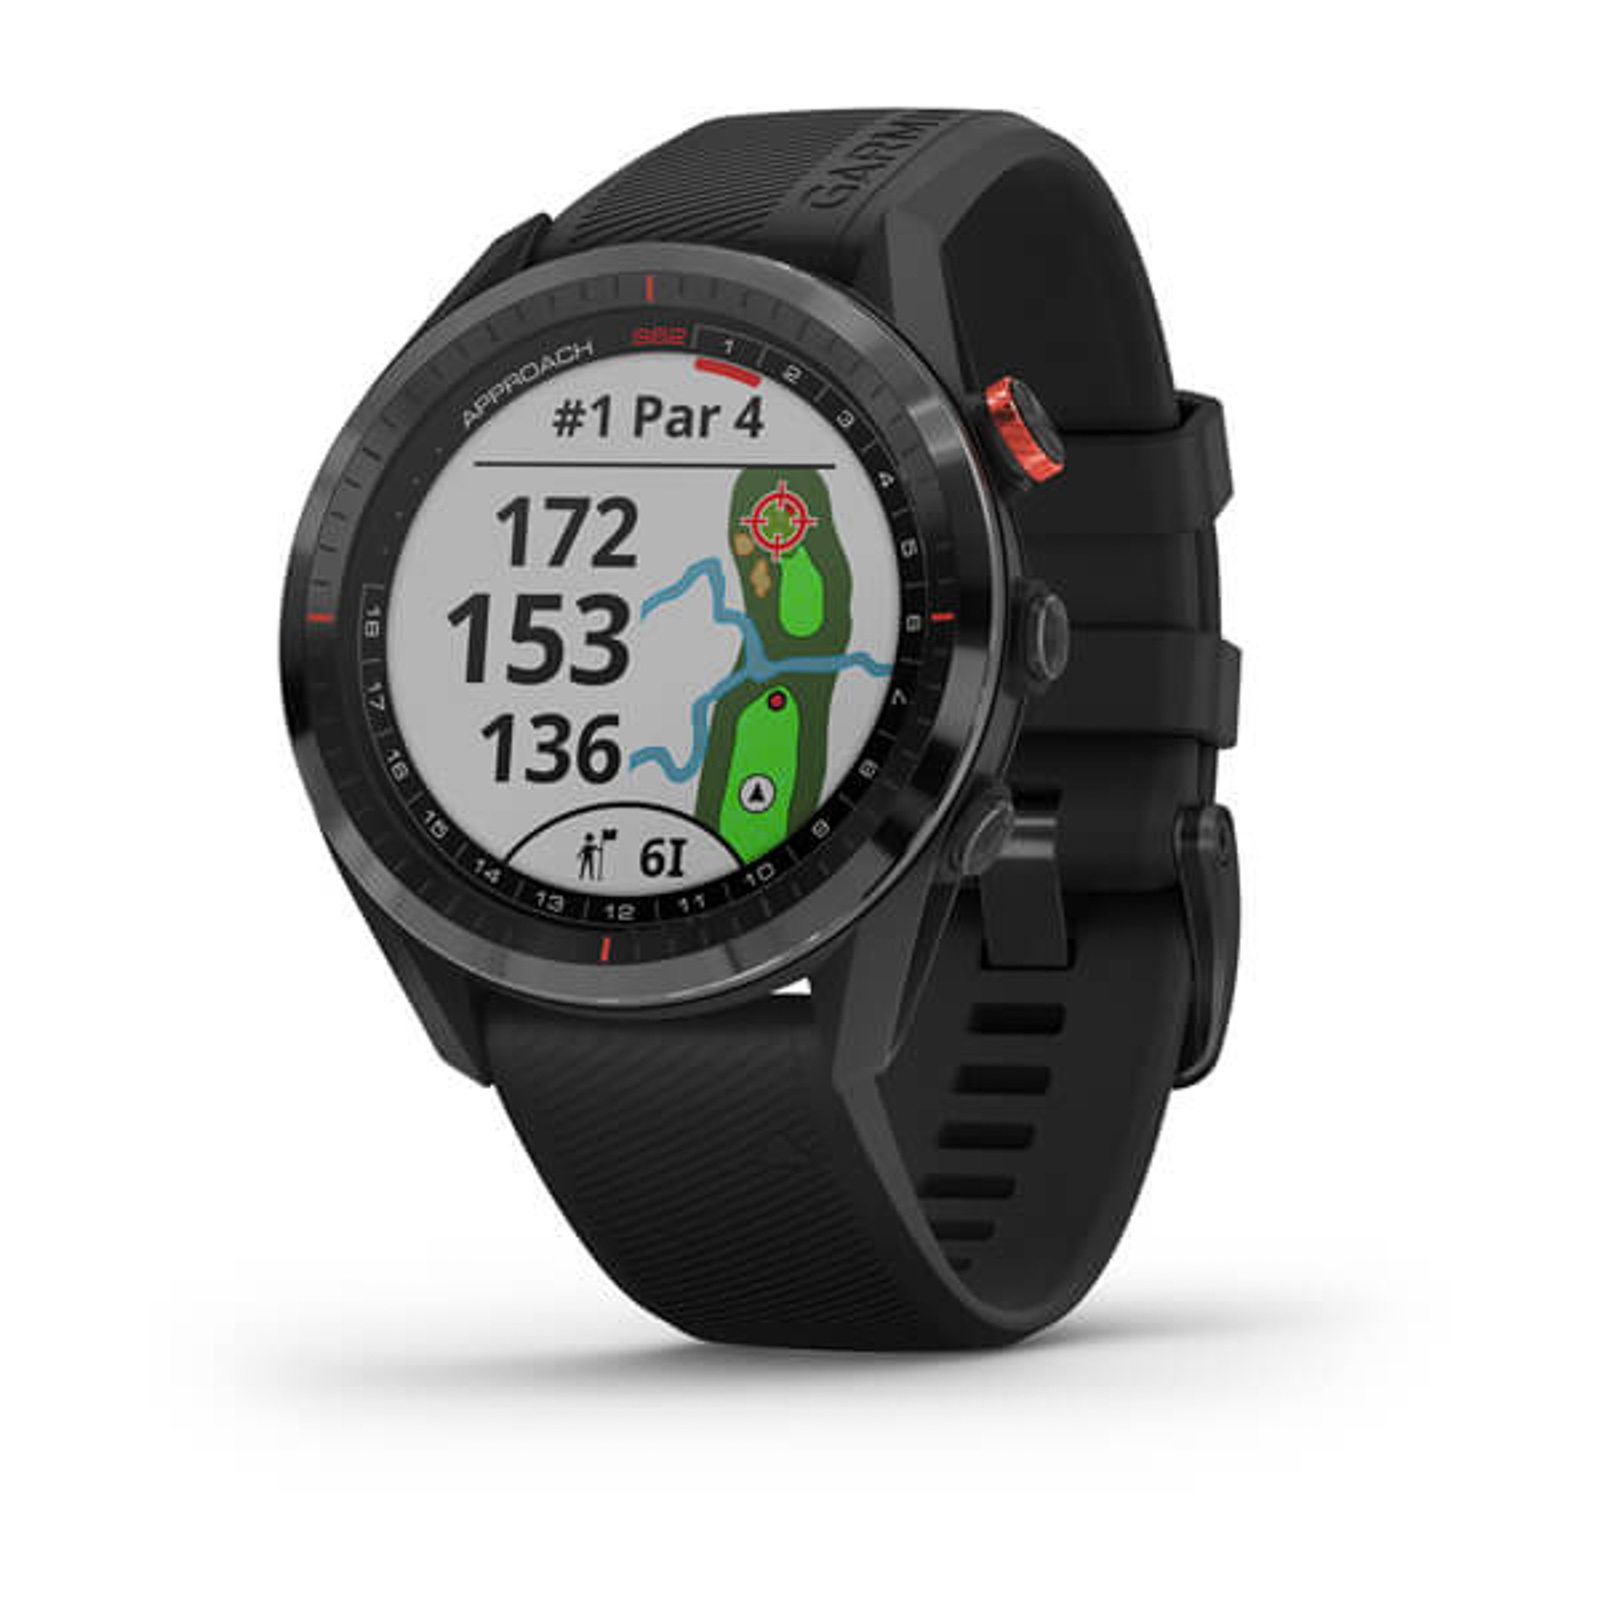 Garmin Approach GPS Golf Watch Is It $500?